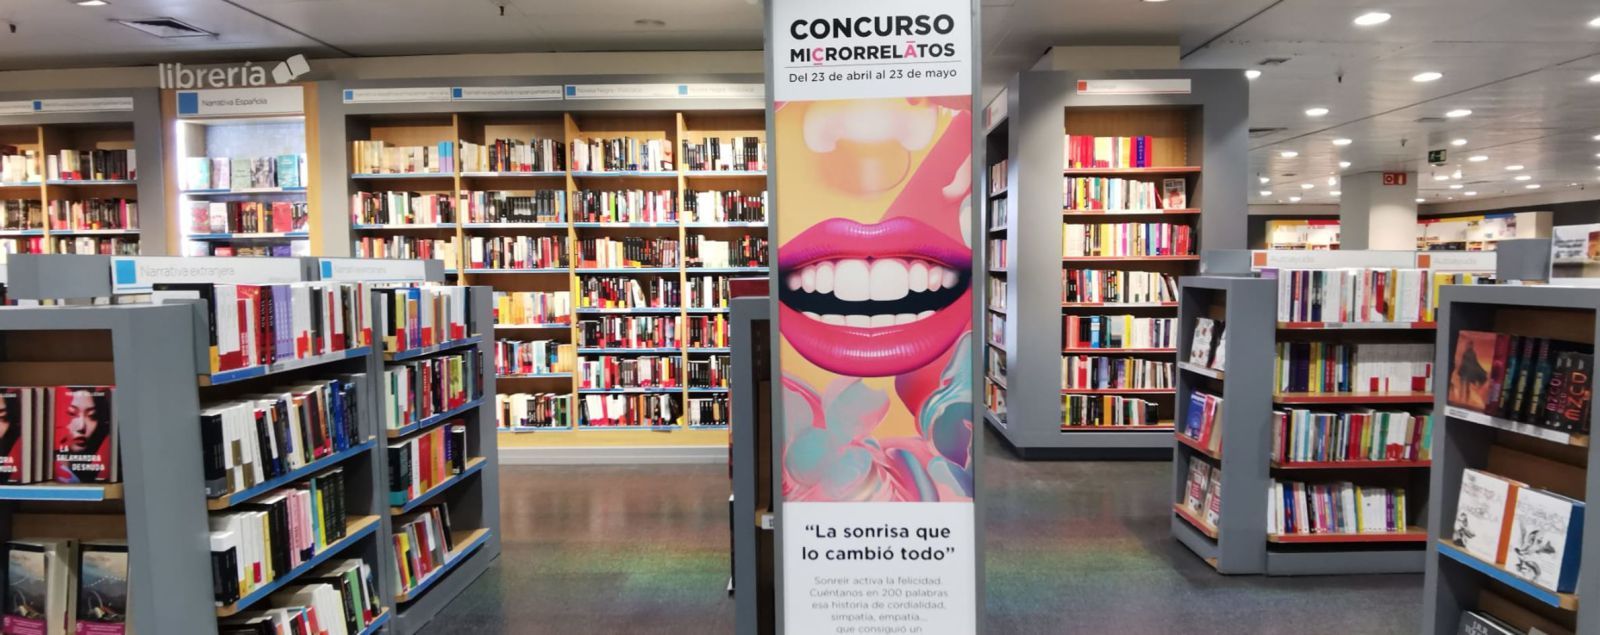 Cartel del concurso en la zona de Librería de El Corte Inglés.